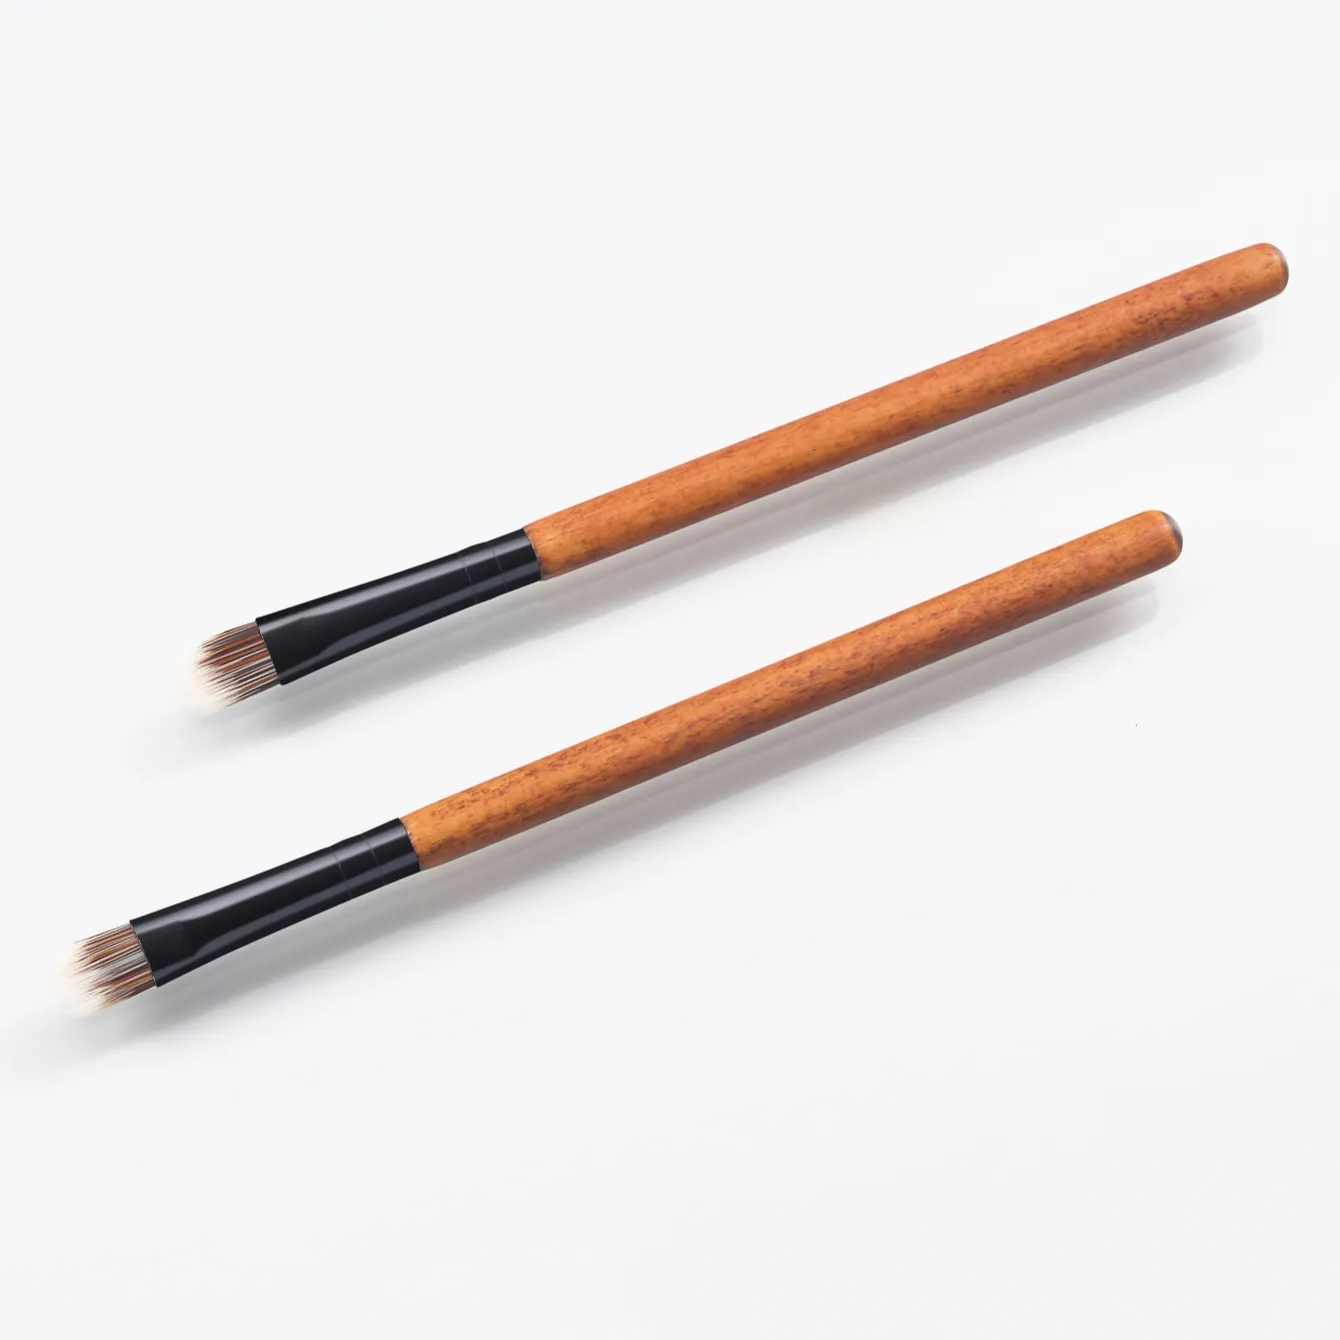 2 kahverengi kapatıcı fırça setleri Private Label vakfı ve kapatıcı makyaj fırçaları